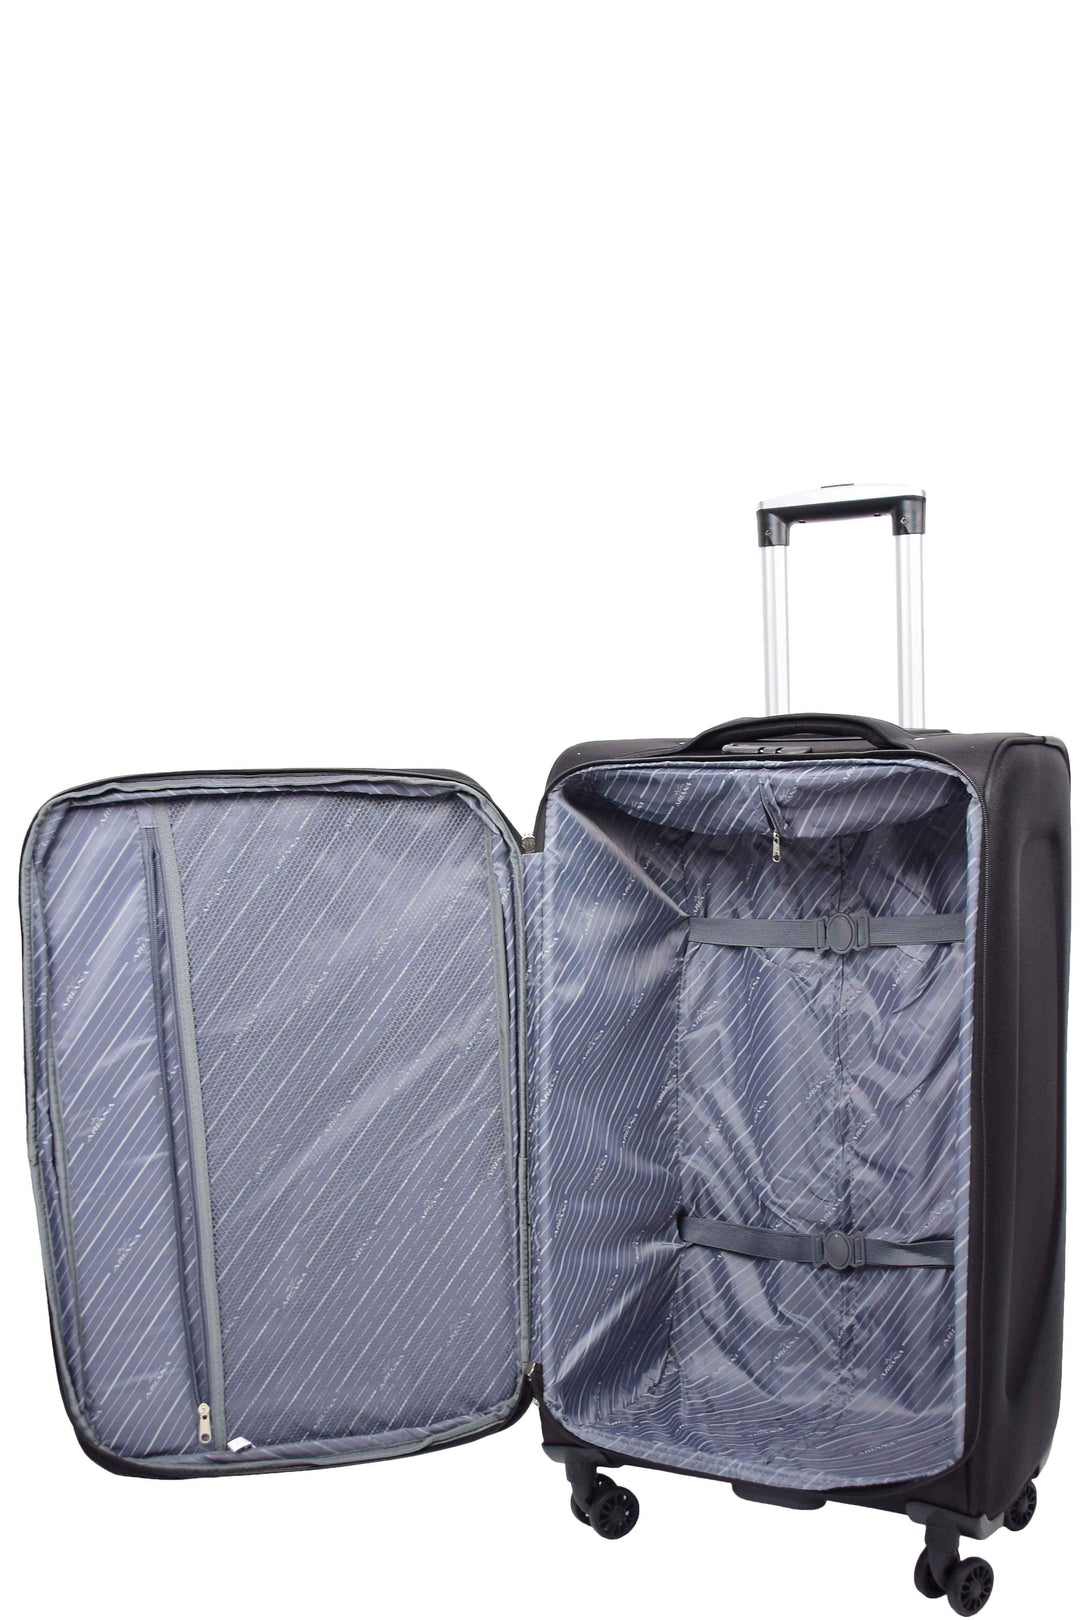 Guardian Lightweight Suitcase 15